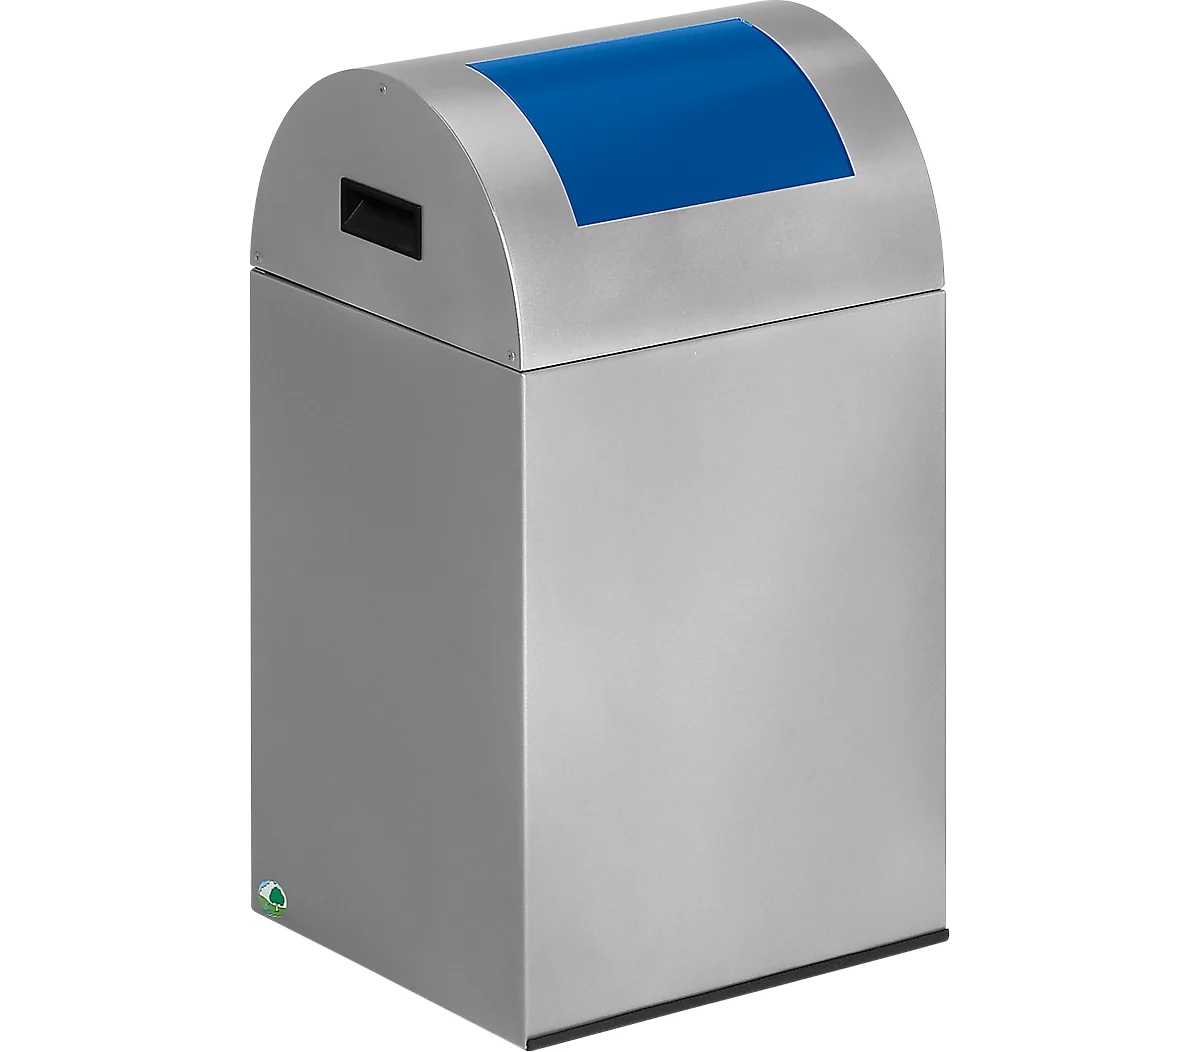 Colector de residuos reciclables autoextinguible 40R, plata/azul